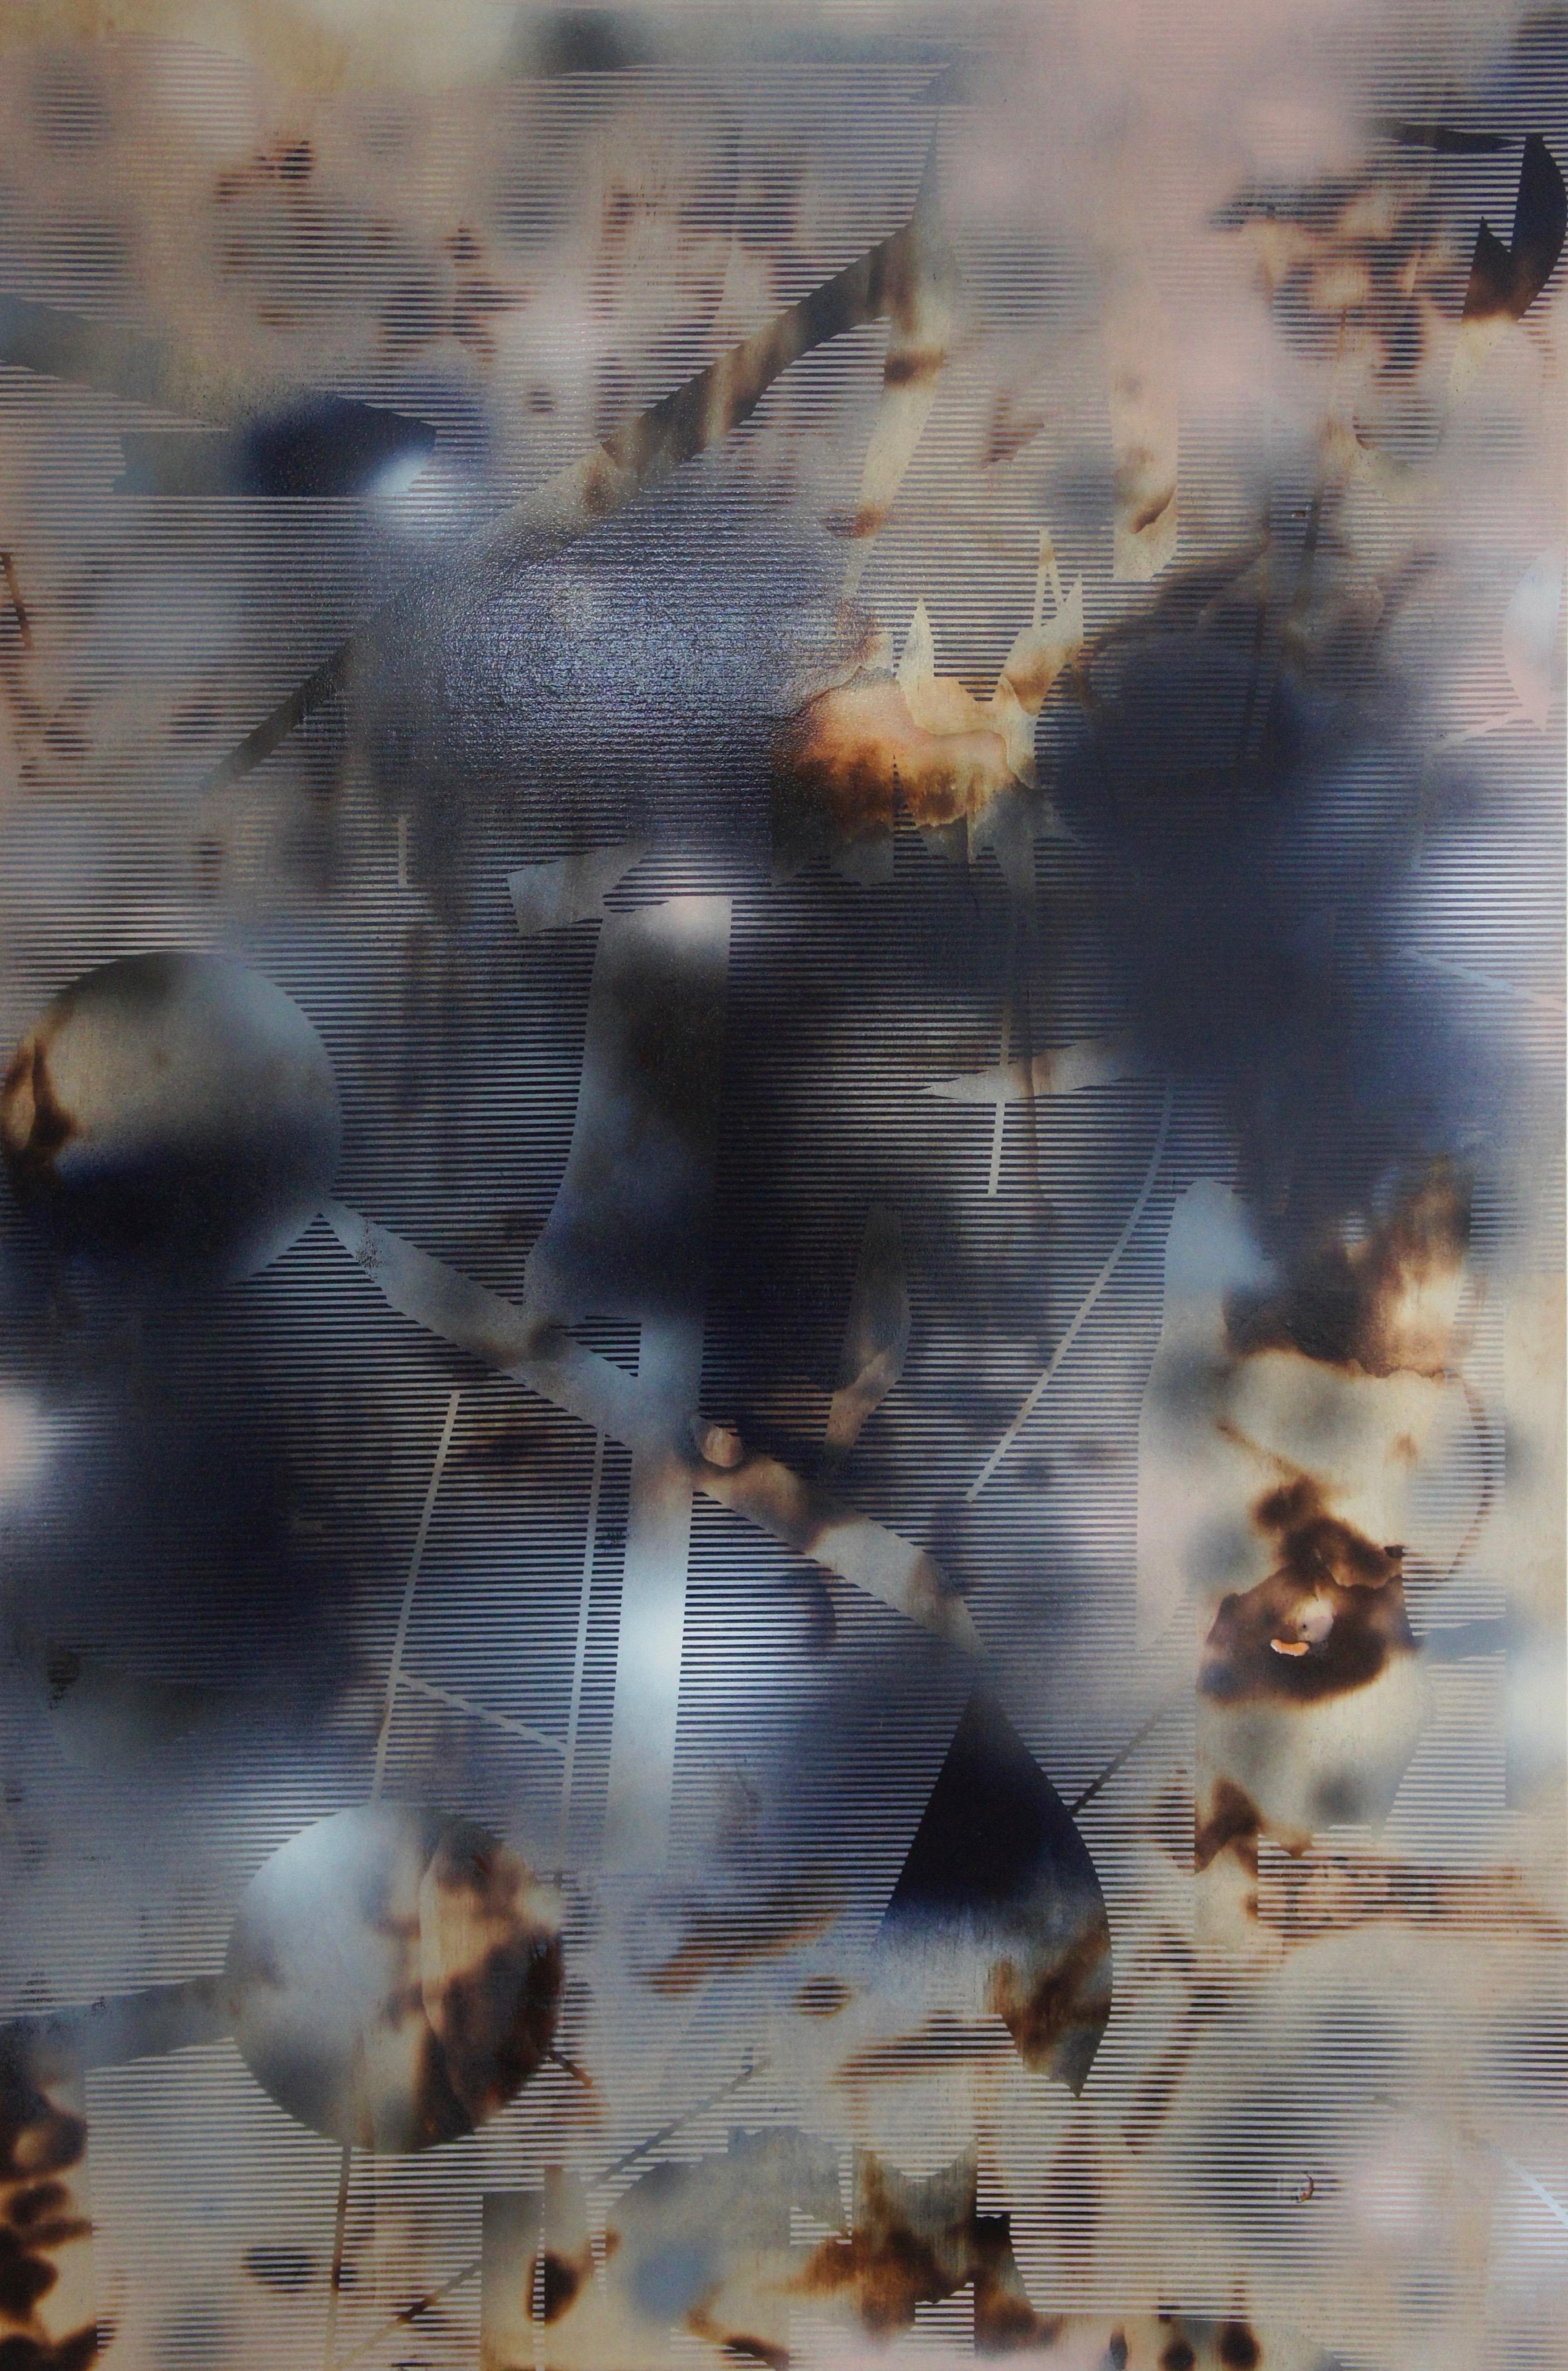 Bildschirm tbd5  (abstrakte Raster-Holzmalerei zeitgenössische neutrale Motive) (Abstrakt), Mixed Media Art, von Melisa Taylor Metzger